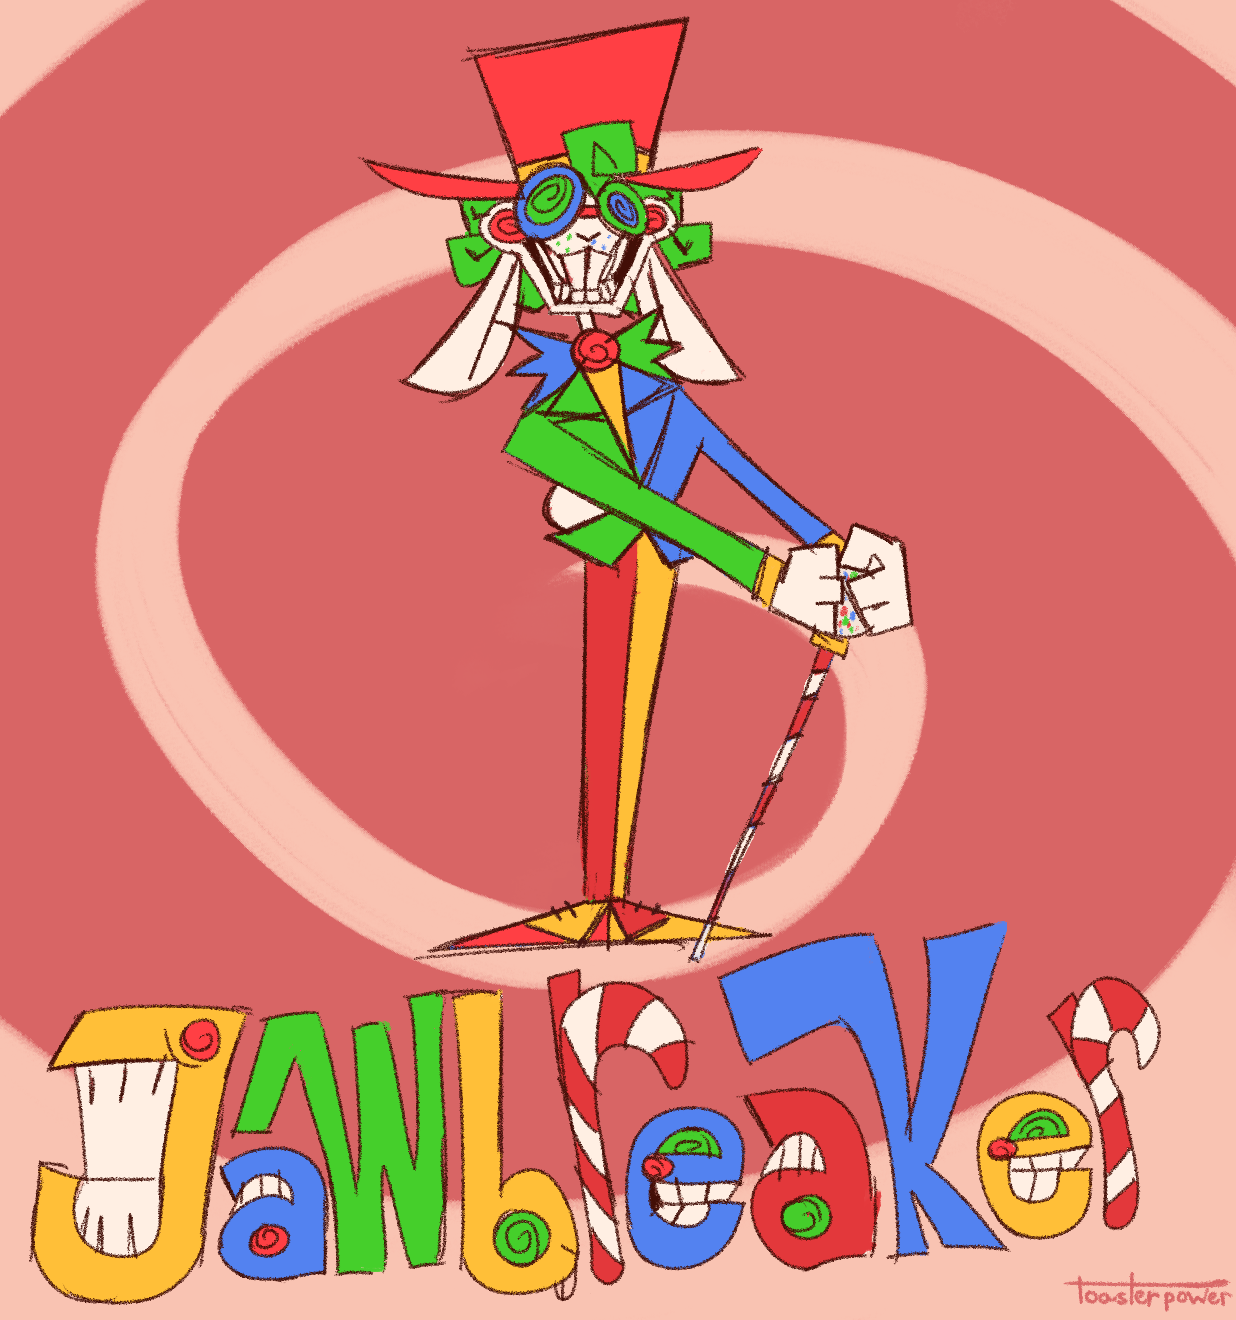 Jawbreaker [Withered Chica Fan Art] : r/fivenightsatfreddys